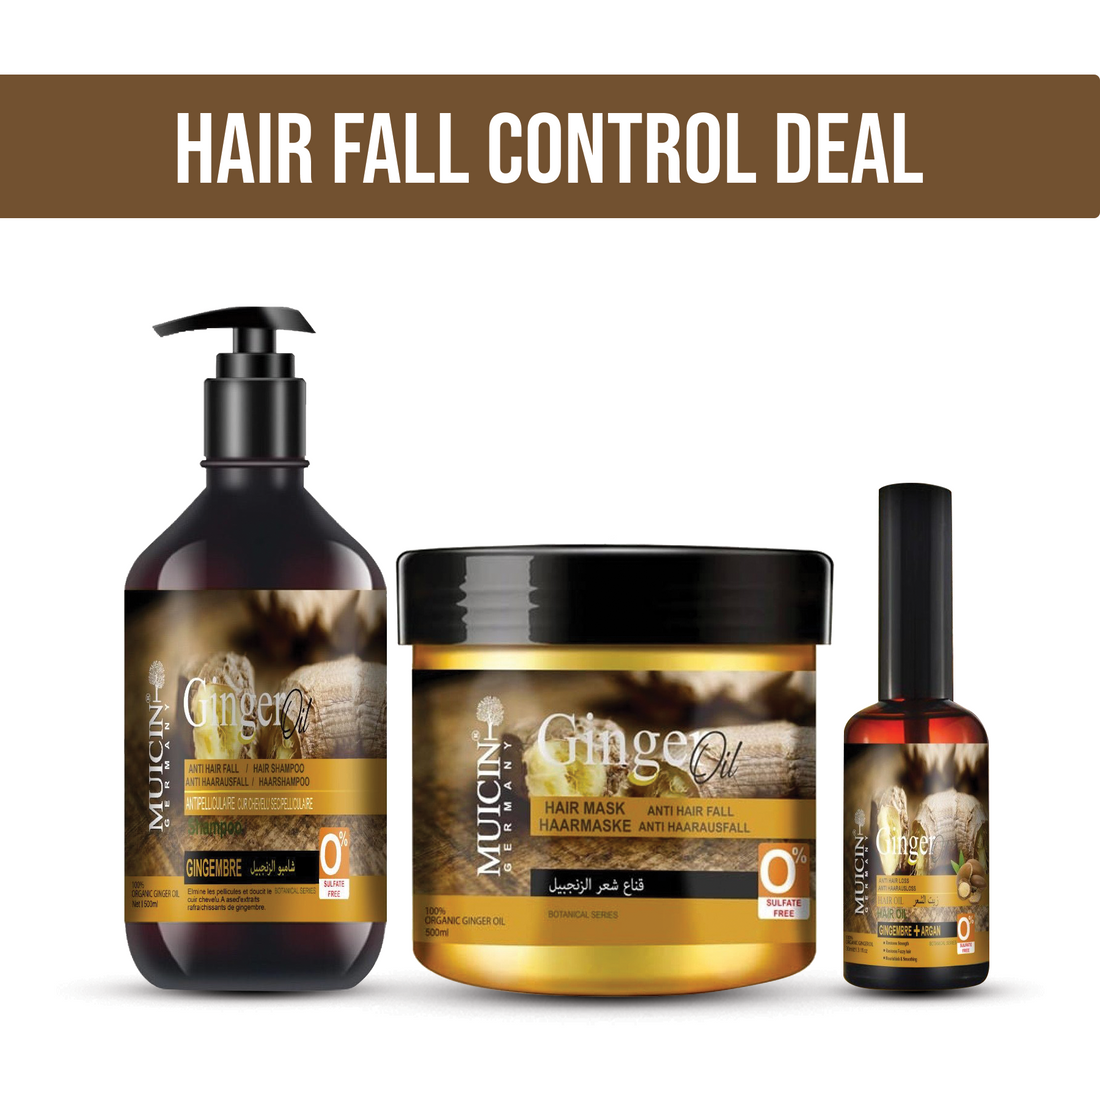 Hair Fall Control Deal